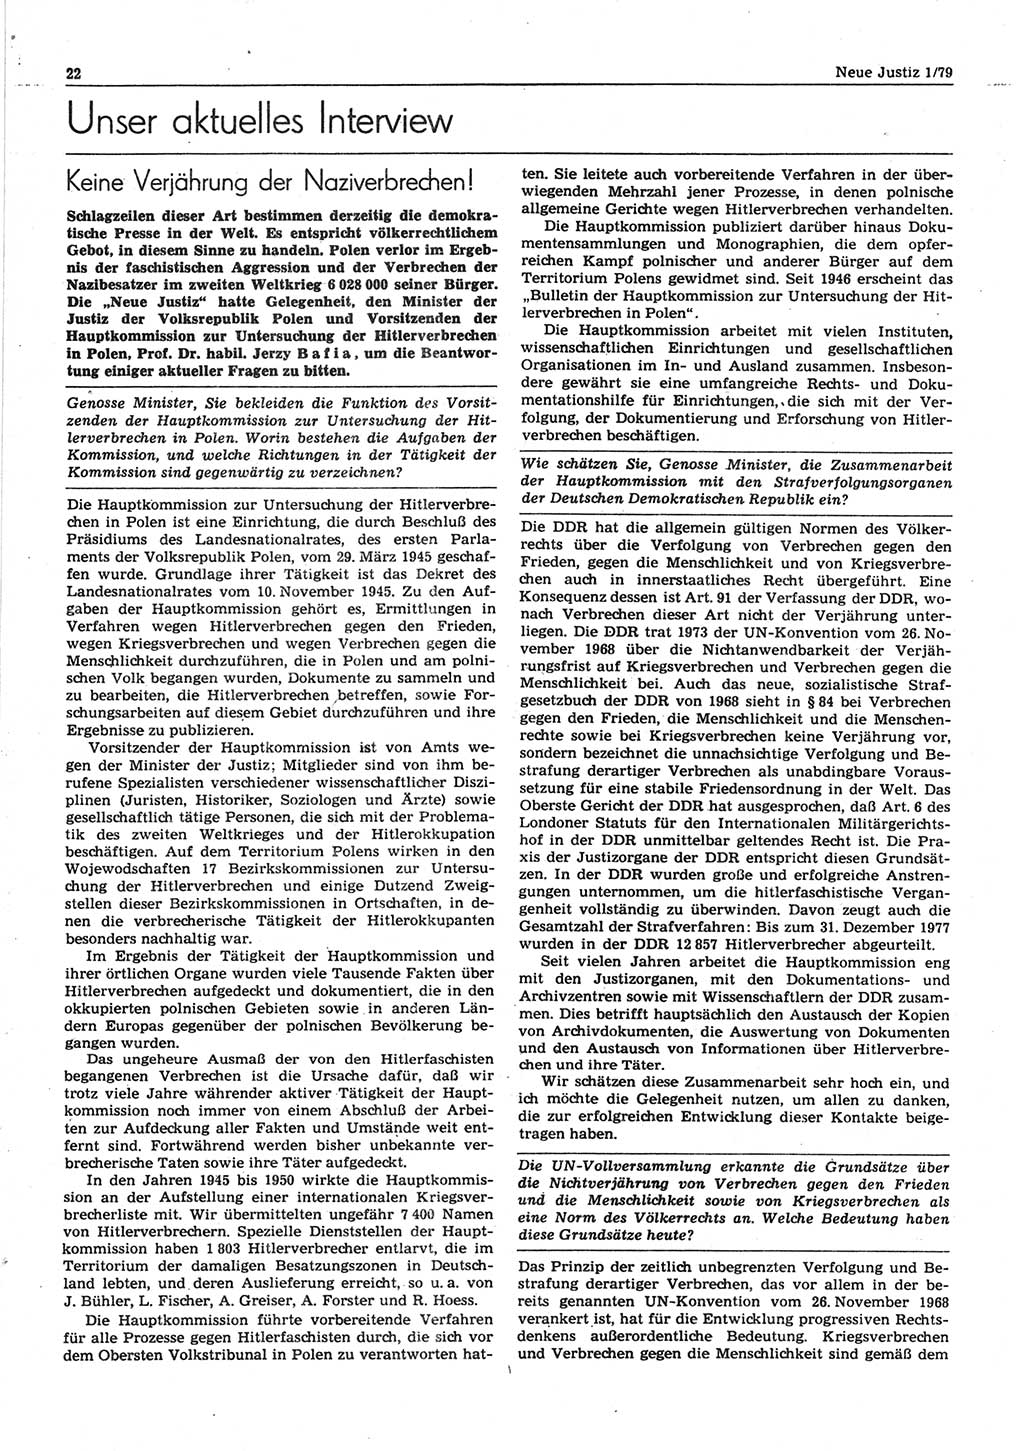 Neue Justiz (NJ), Zeitschrift für sozialistisches Recht und Gesetzlichkeit [Deutsche Demokratische Republik (DDR)], 33. Jahrgang 1979, Seite 22 (NJ DDR 1979, S. 22)